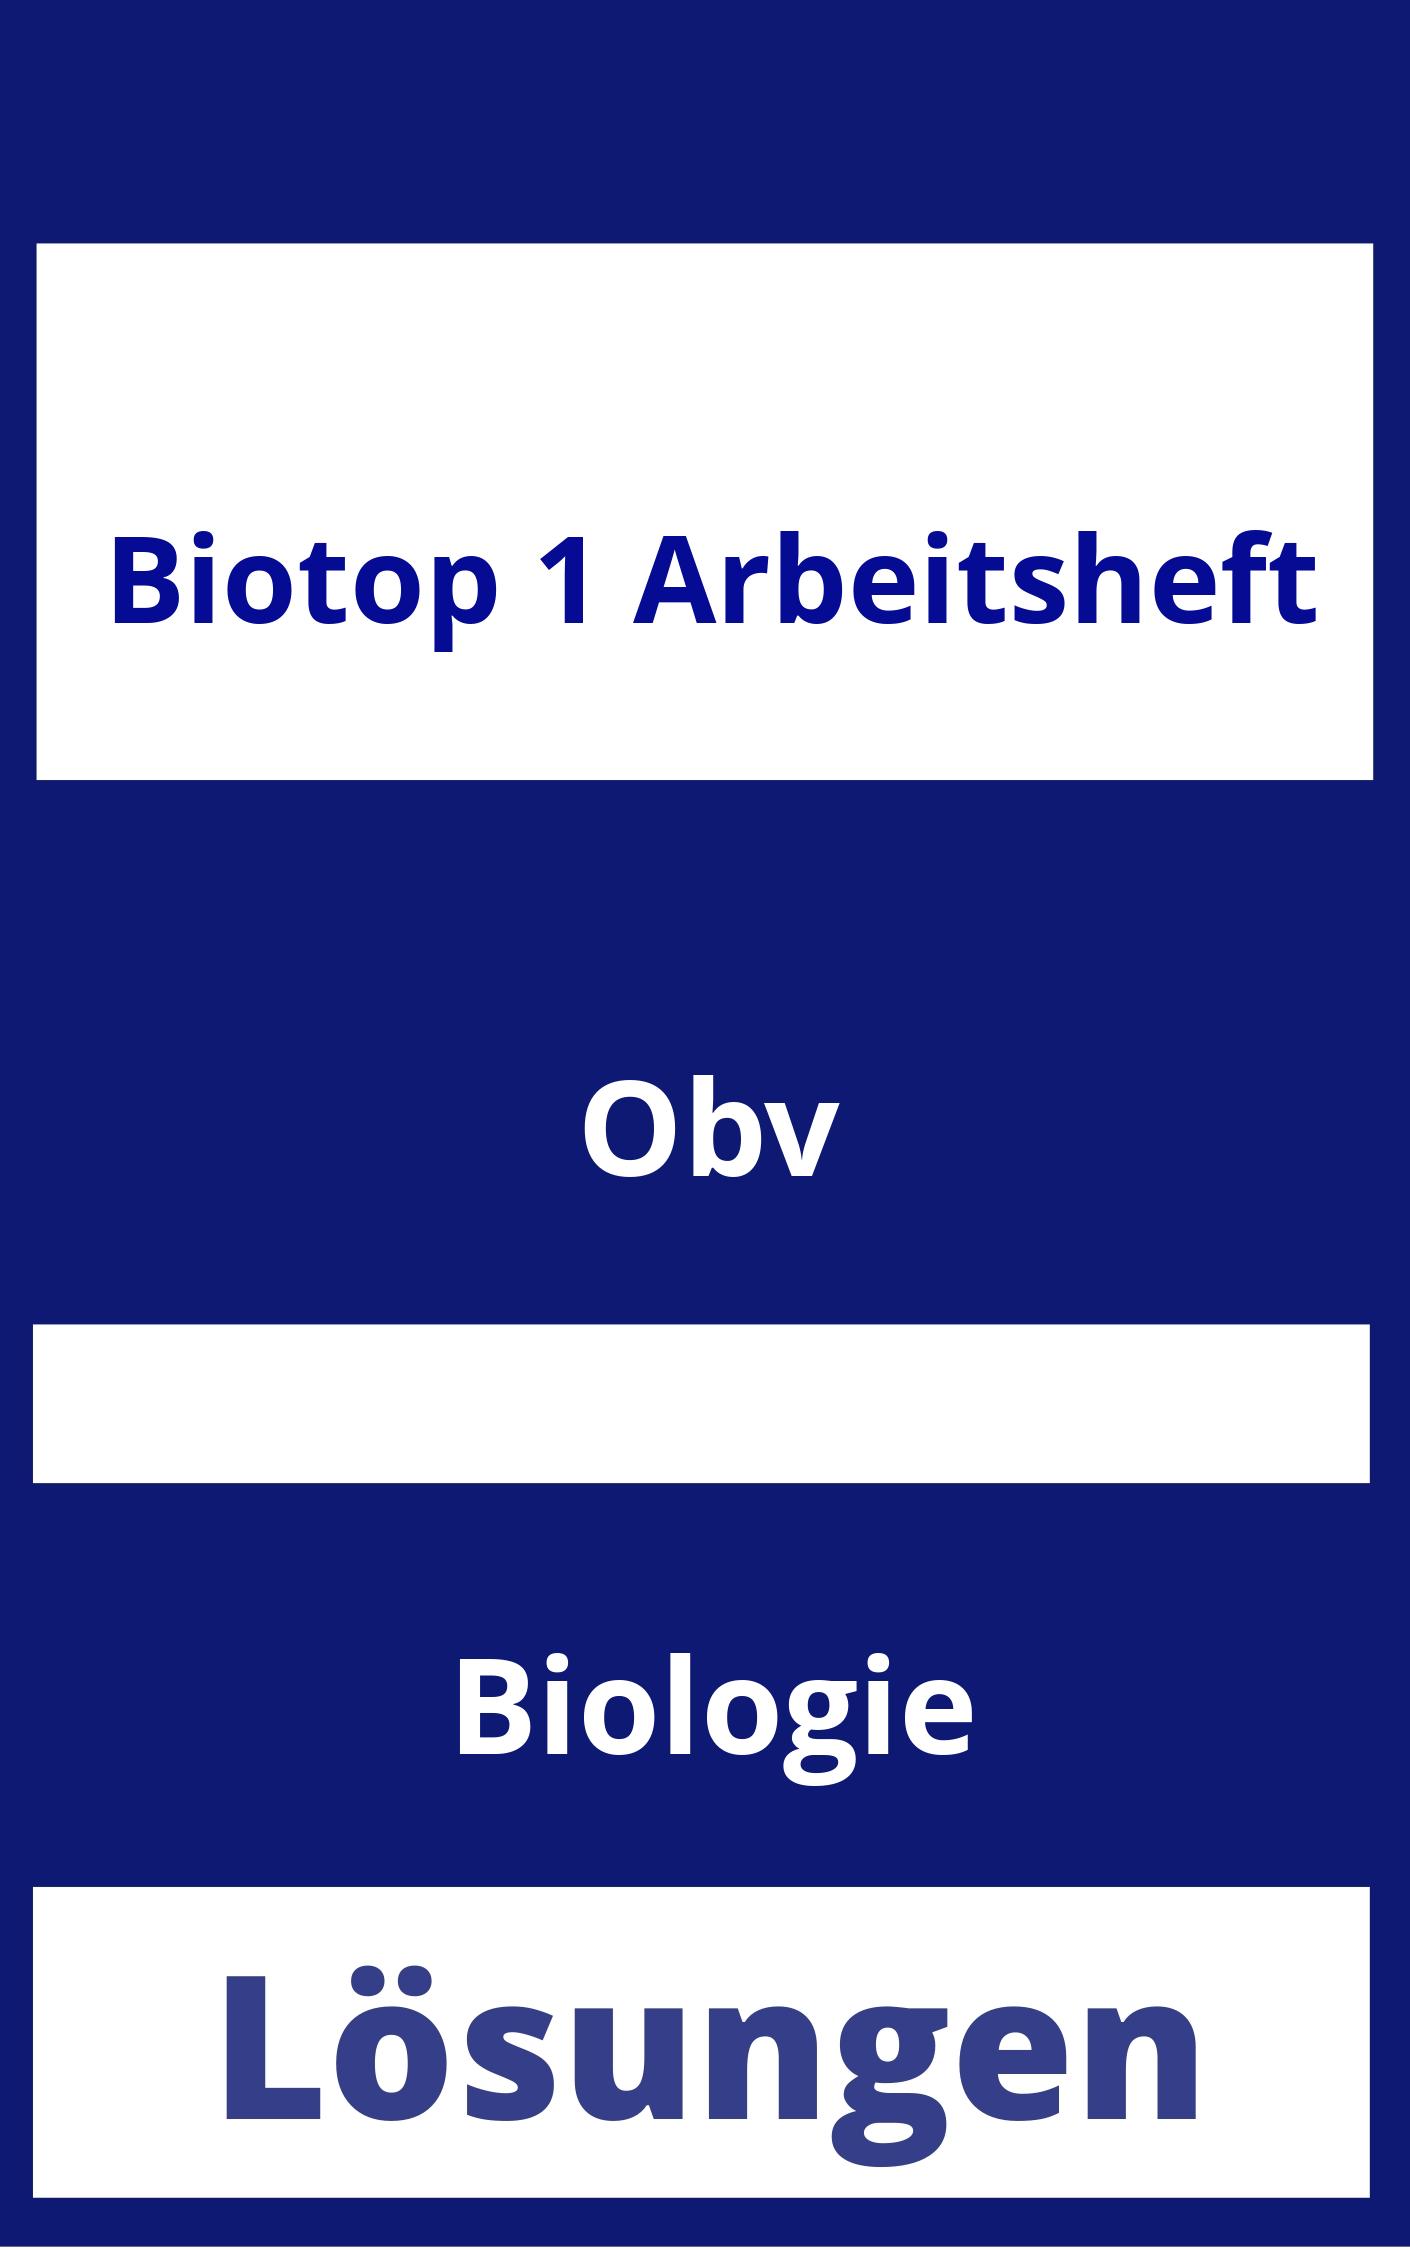 BioTop 1 Arbeitsheft Lösungen PDF